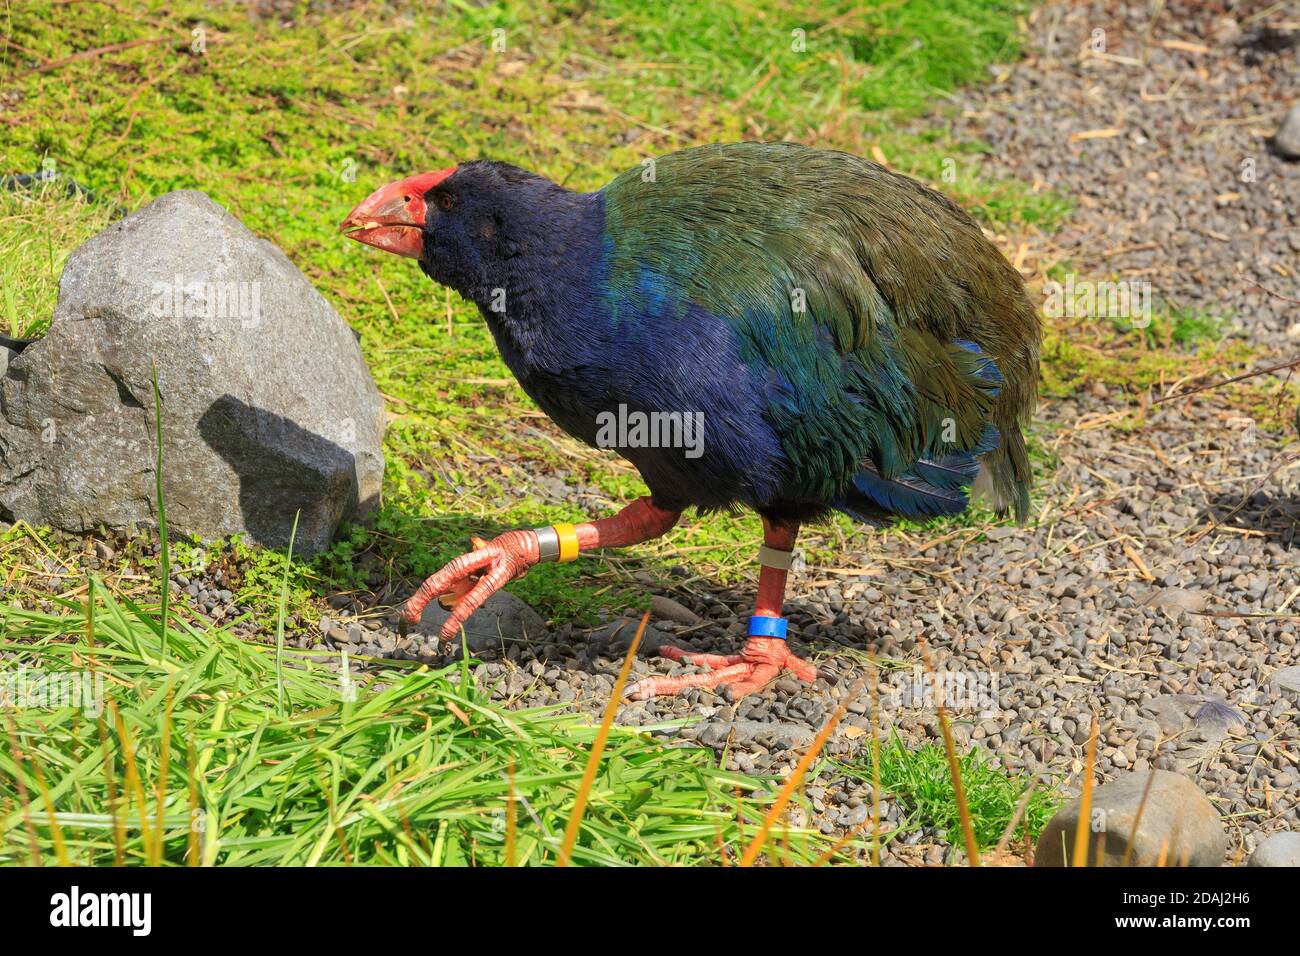 Un takahe, un ave en peligro de extinción, que solo se encuentra en Nueva Zelanda con un hermoso plumaje azul y verde Foto de stock